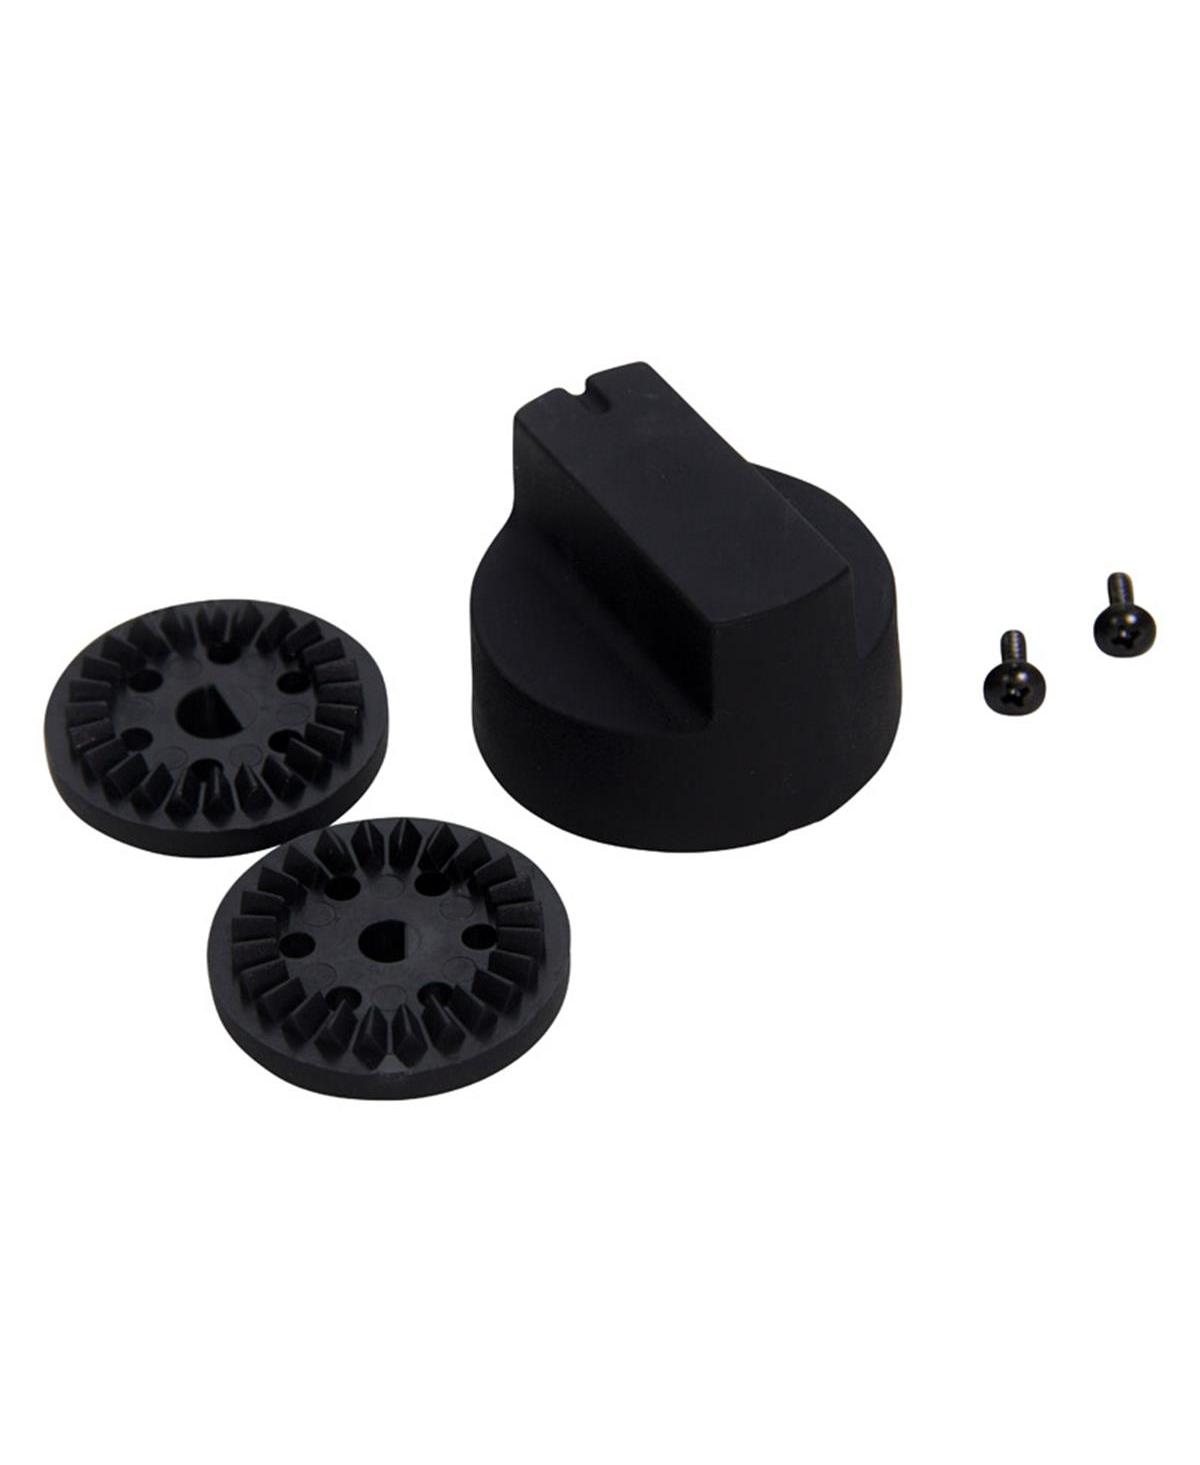 8011450 Plastic Grill Control Knob, Black - 4.8 x 2.87 x 2.13 in. - Black